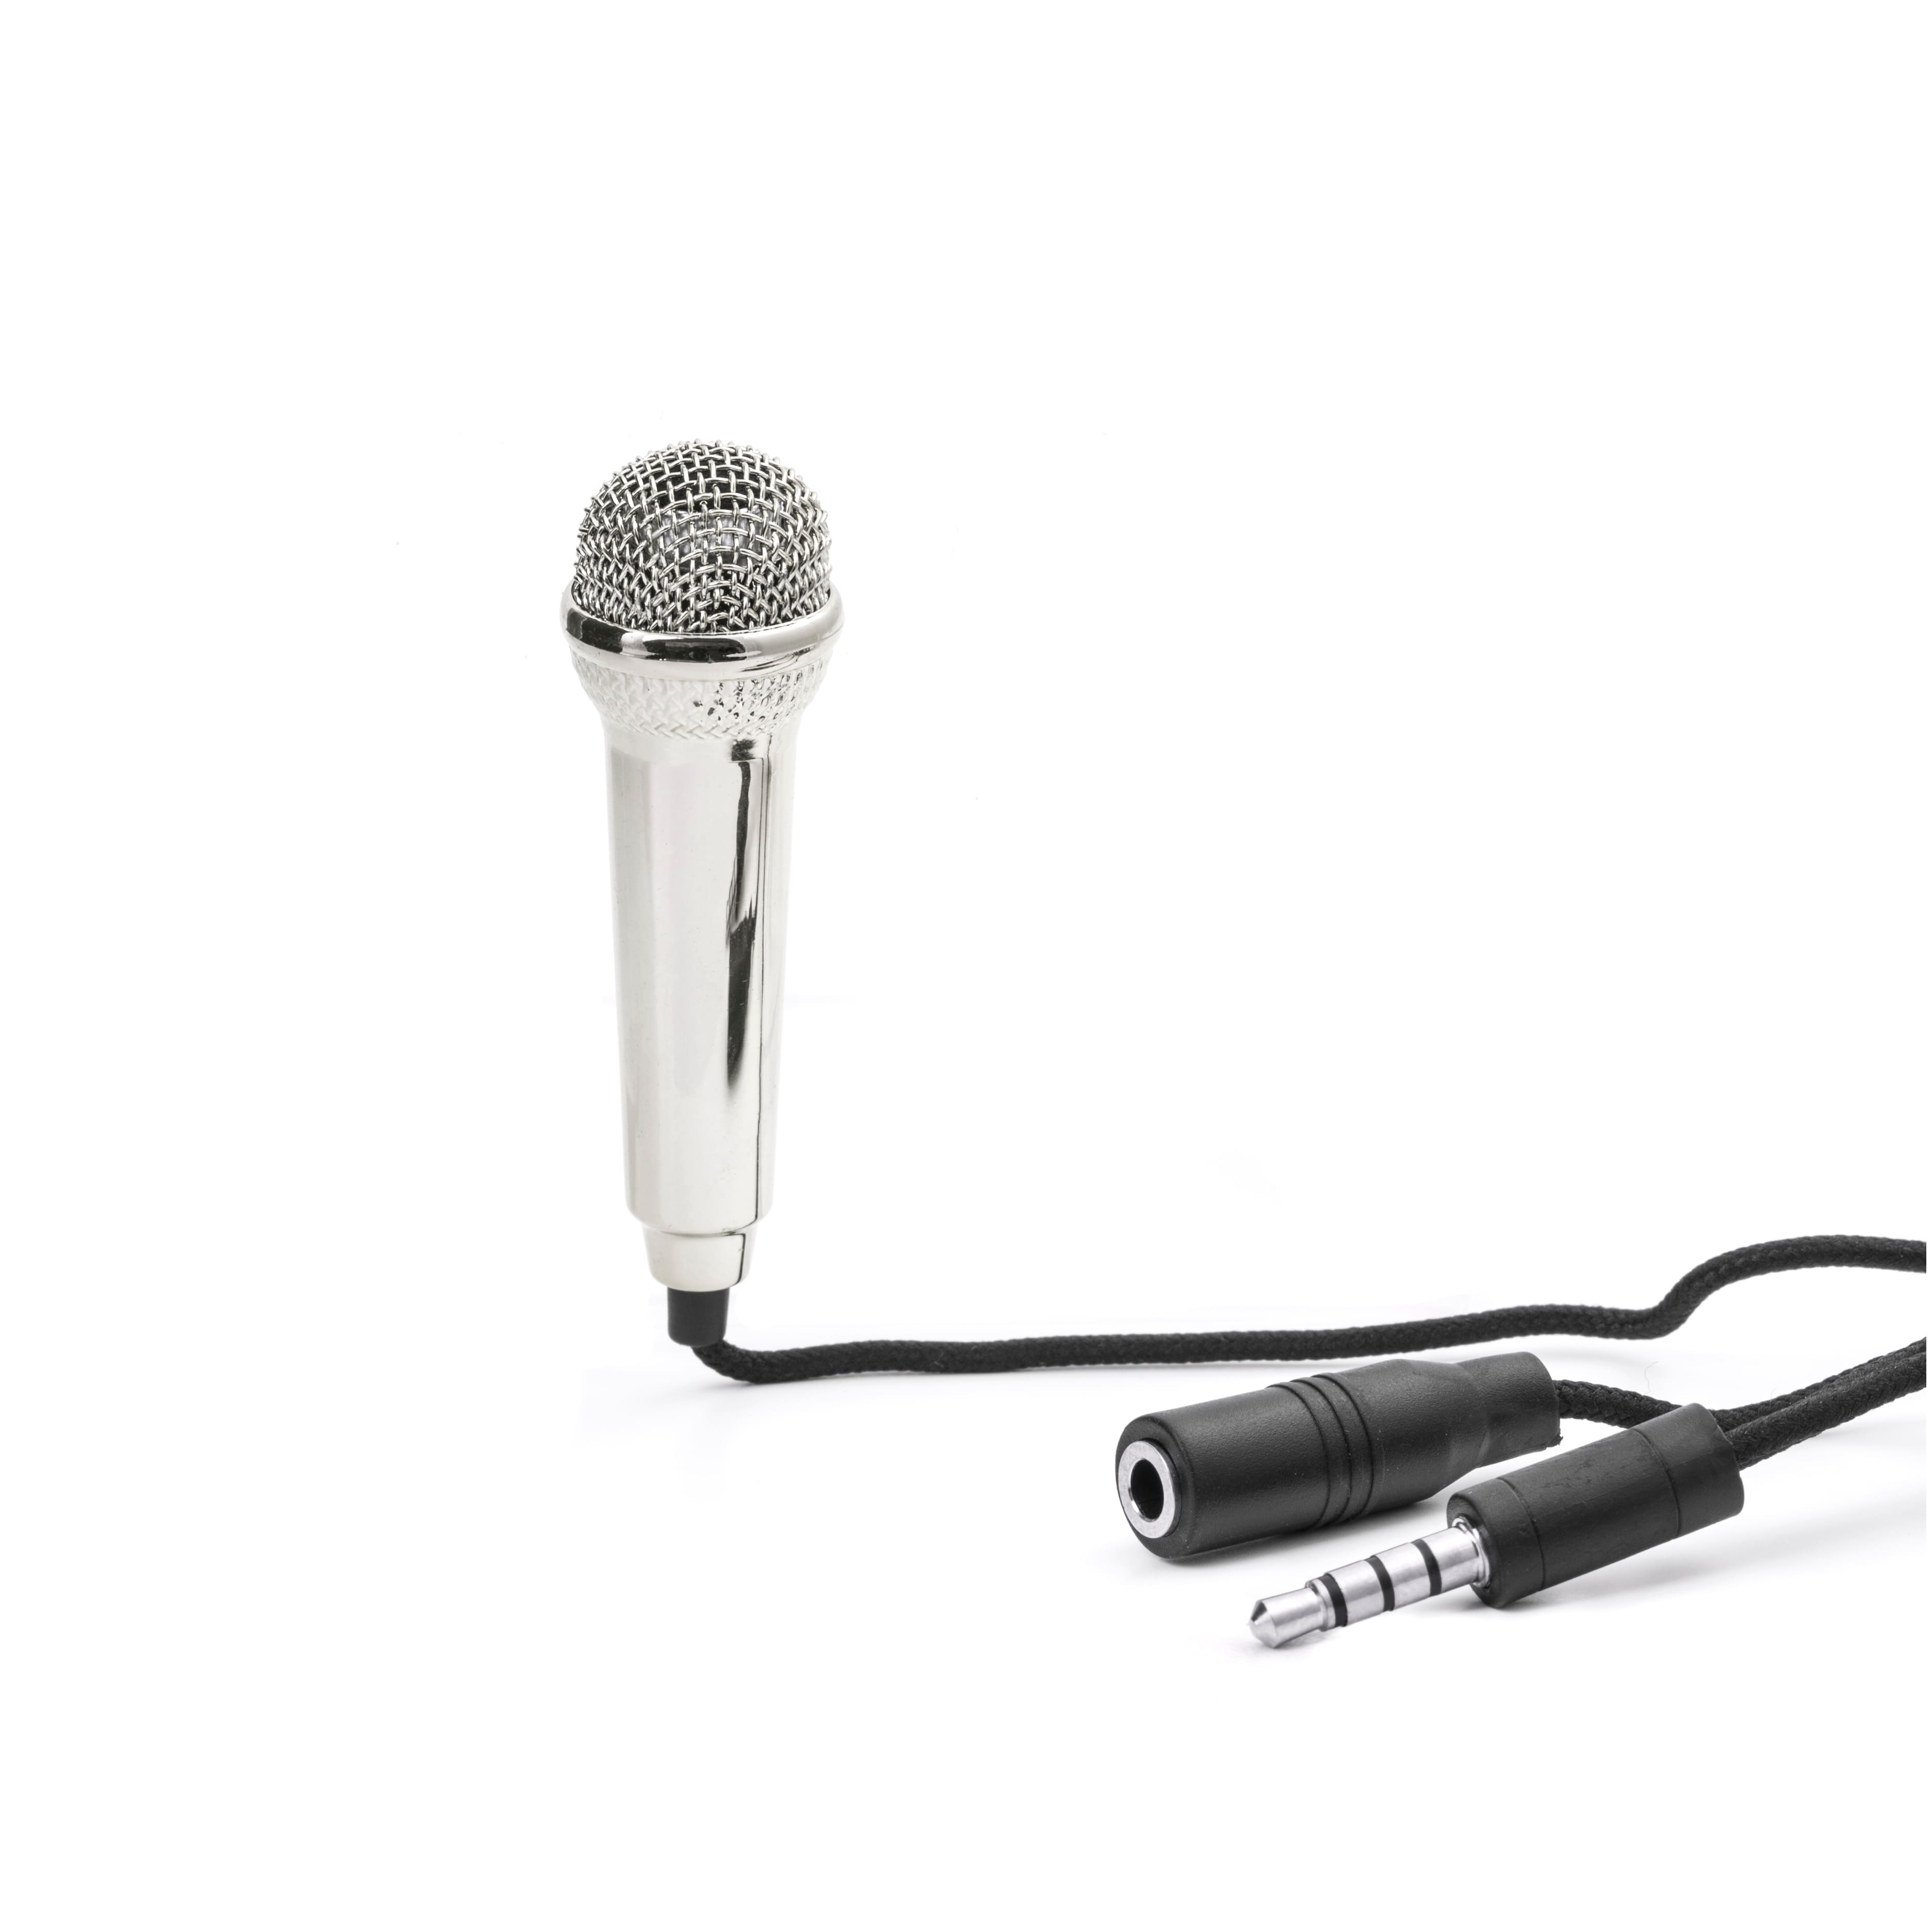 Kikkerland&#xAE; Mini Karaoke Microphone